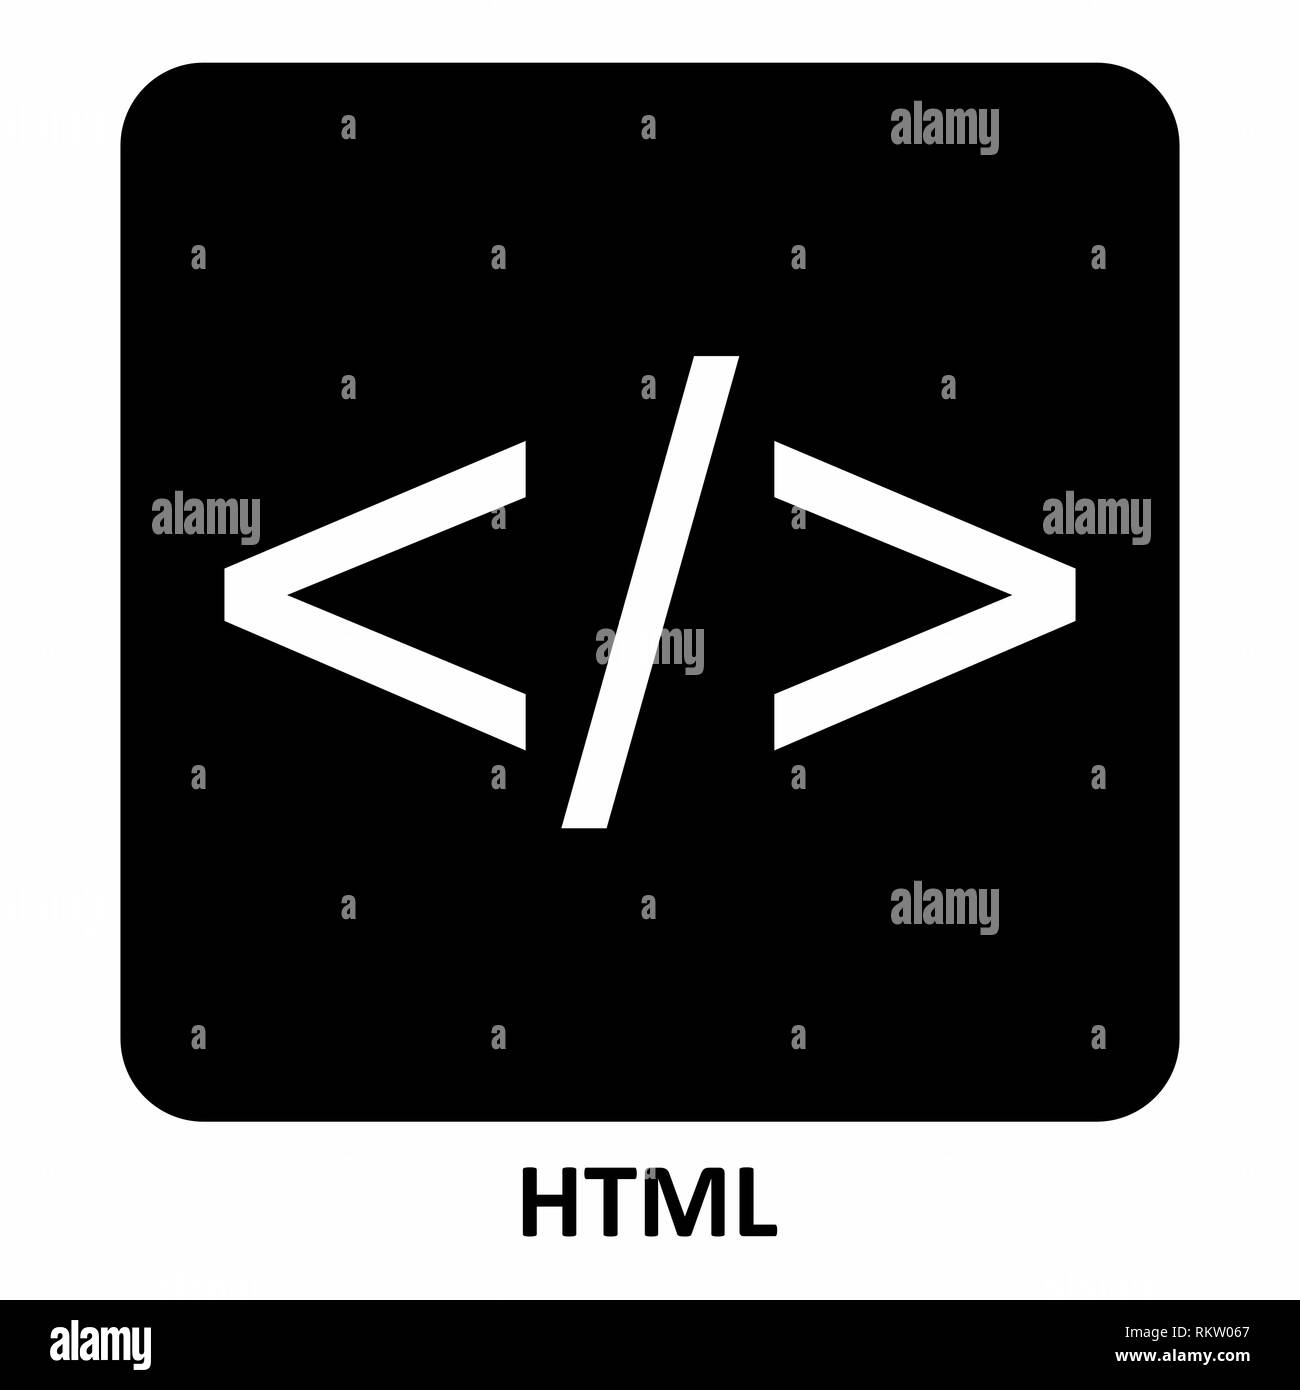 HTML symbol illustration Stock Vector